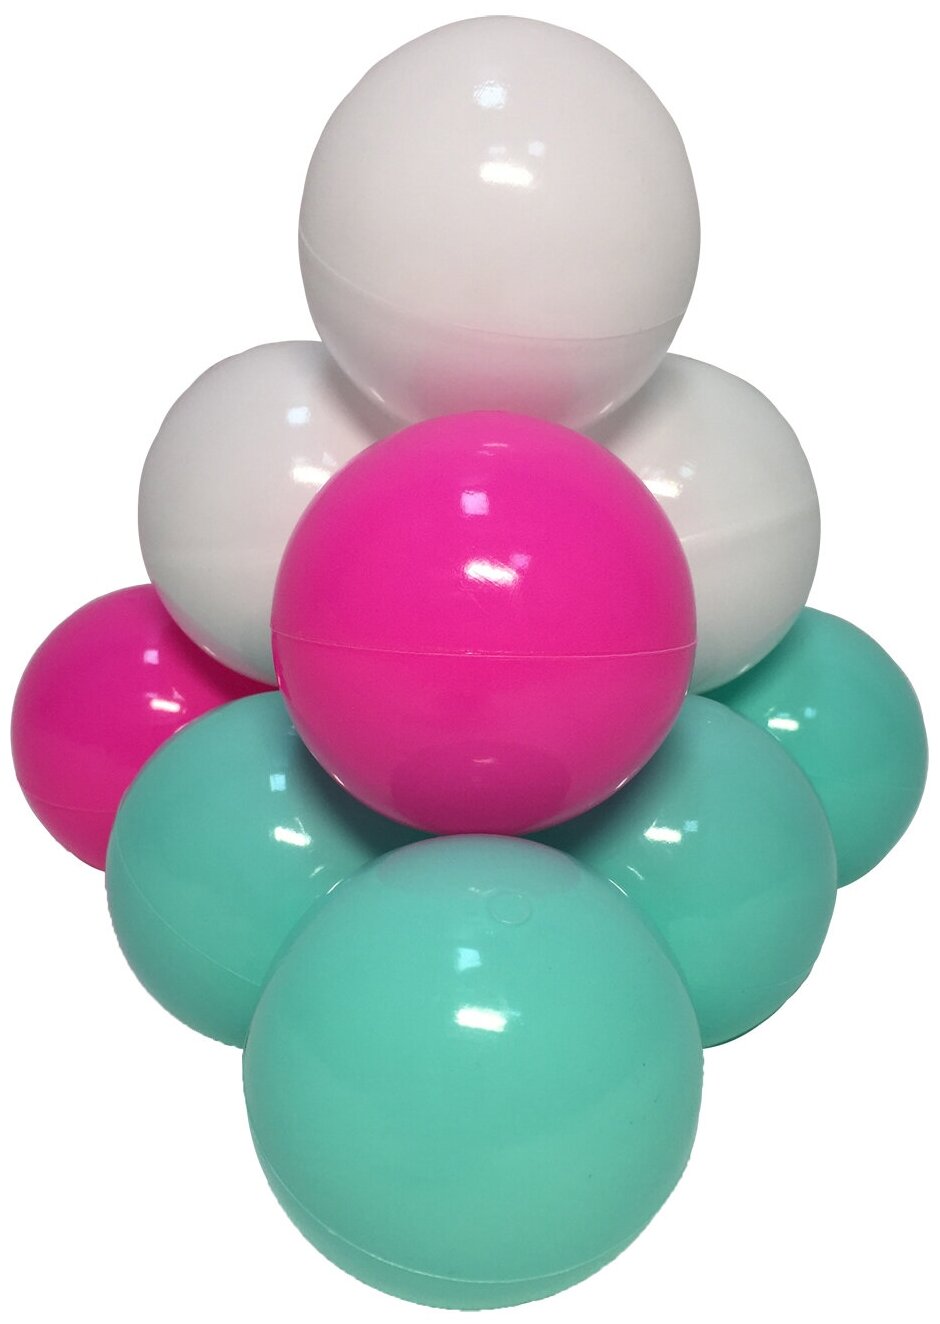 Комплект шариков Hotenok Детский праздник 150 шт: мятный, белый, розовый для сухого бассейна, sbh157-150 - фотография № 1